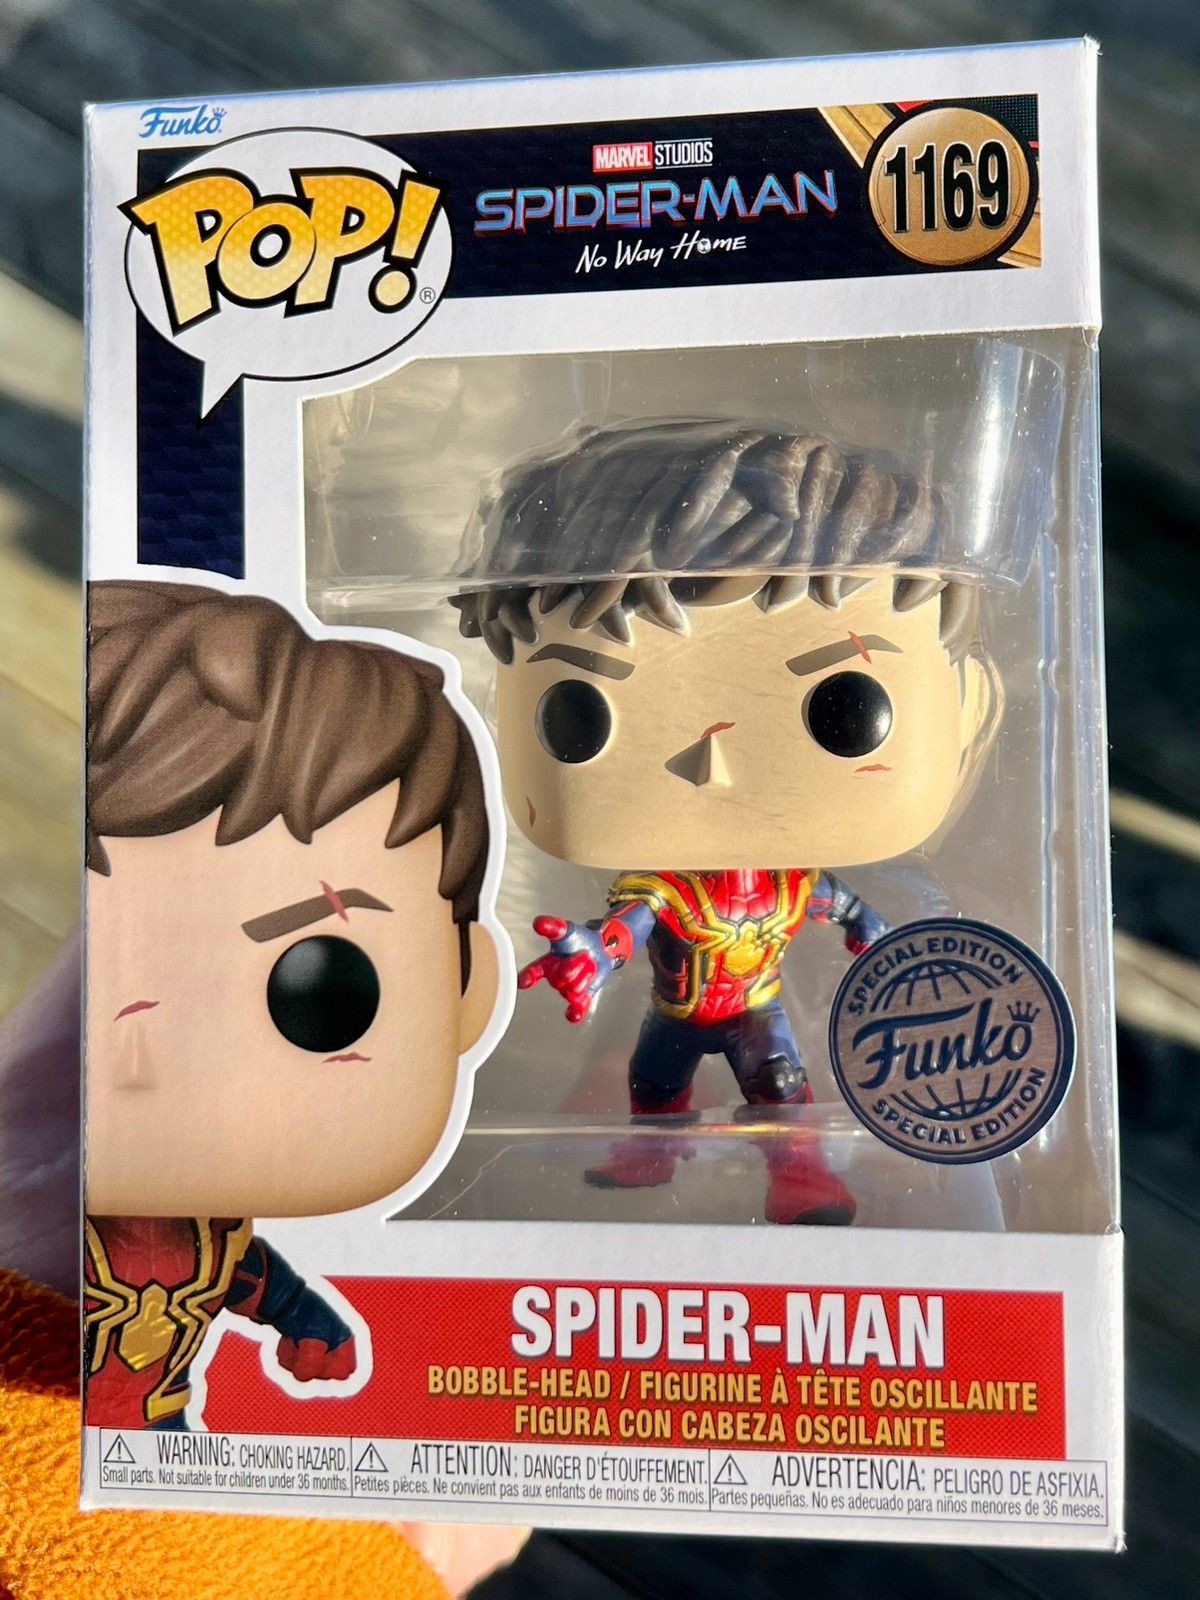 Spider-Man No Way Home - Spider-Man - POP! MARVEL action figure 1169